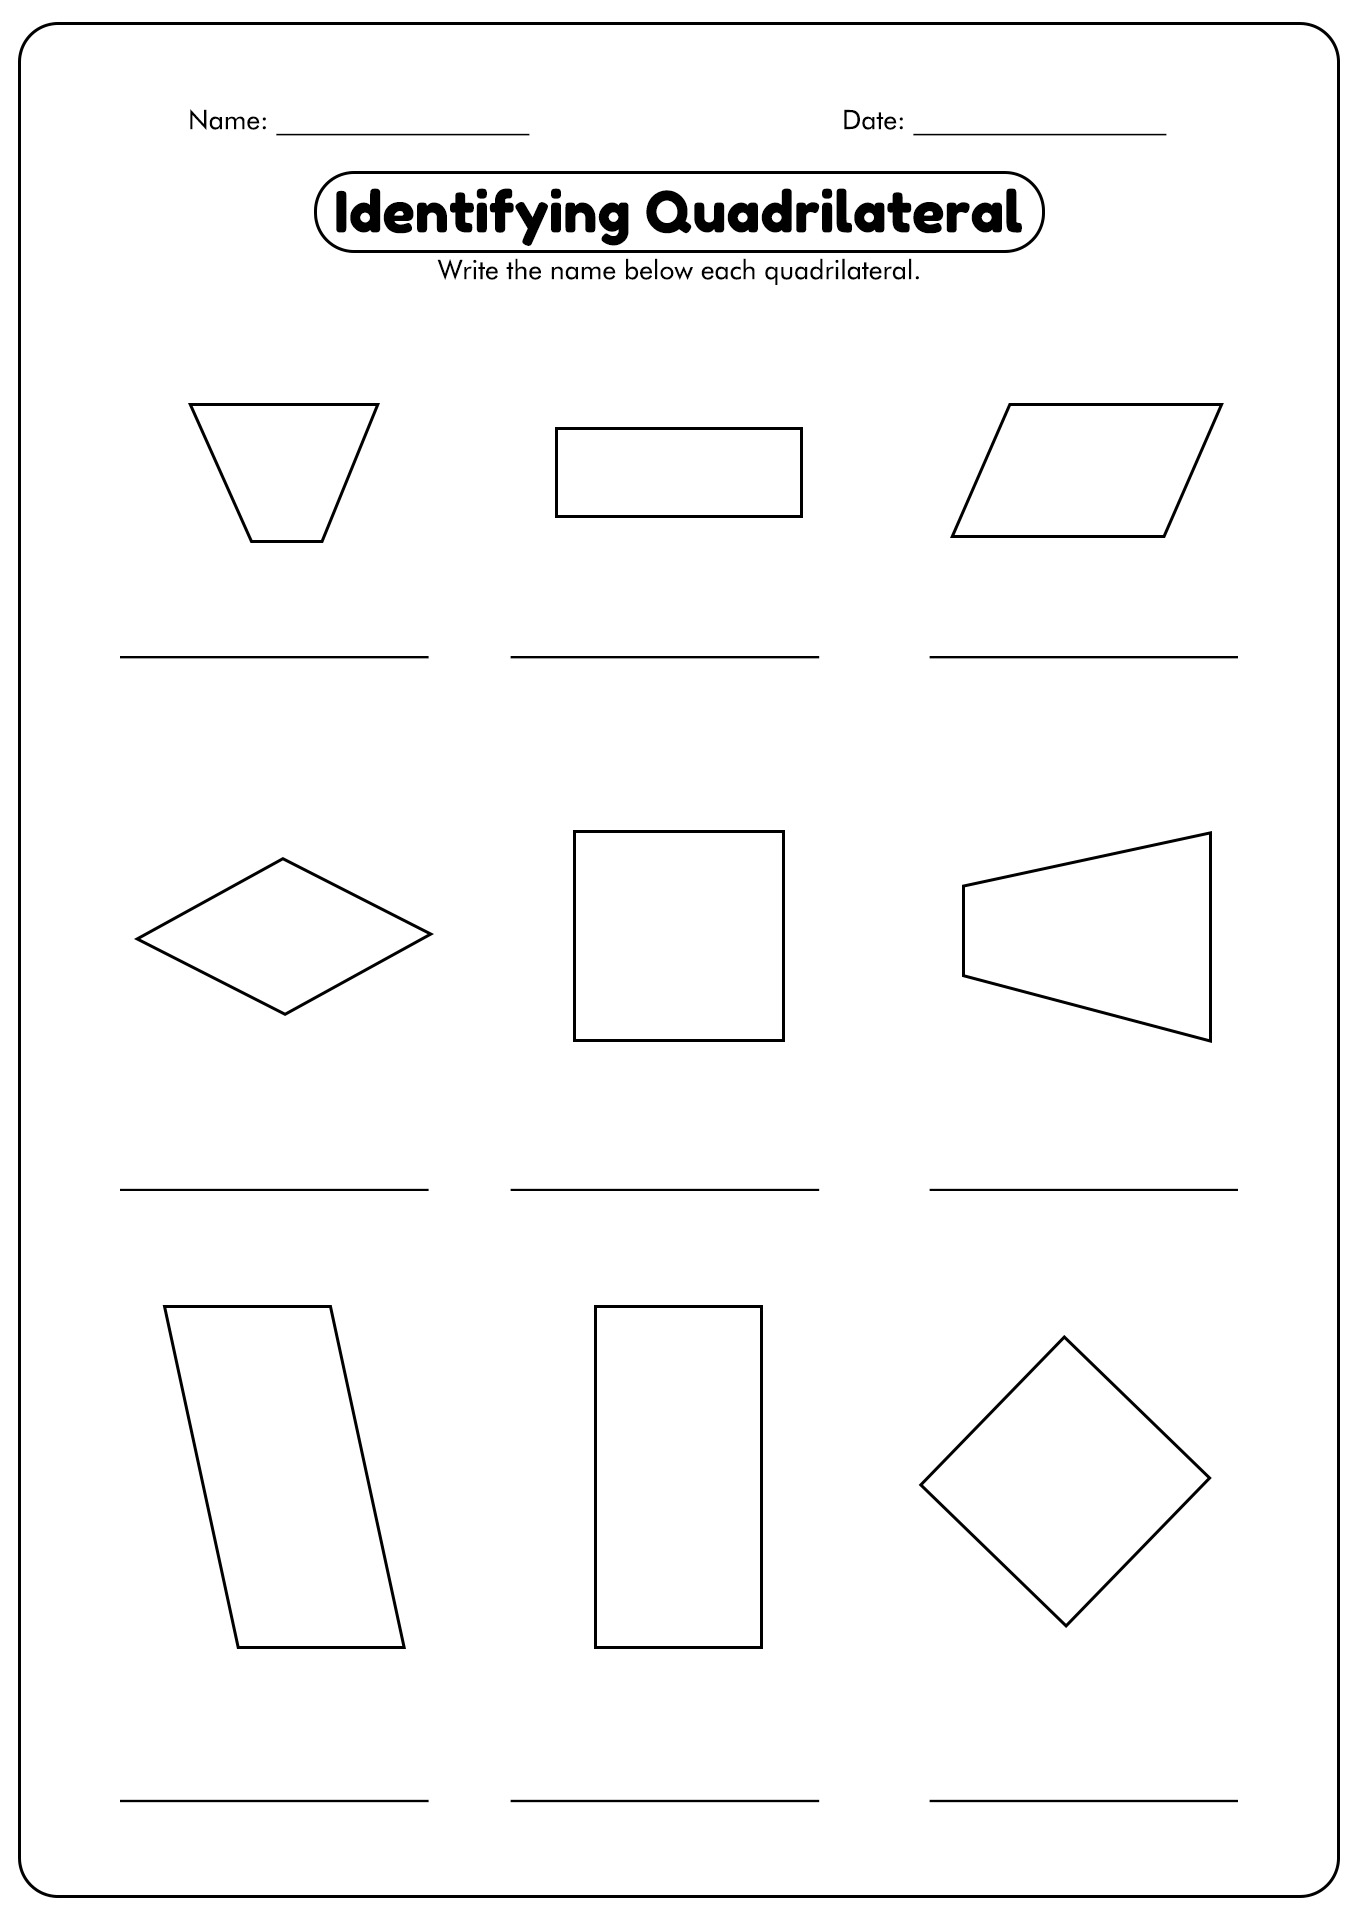 quadrilateral-worksheet